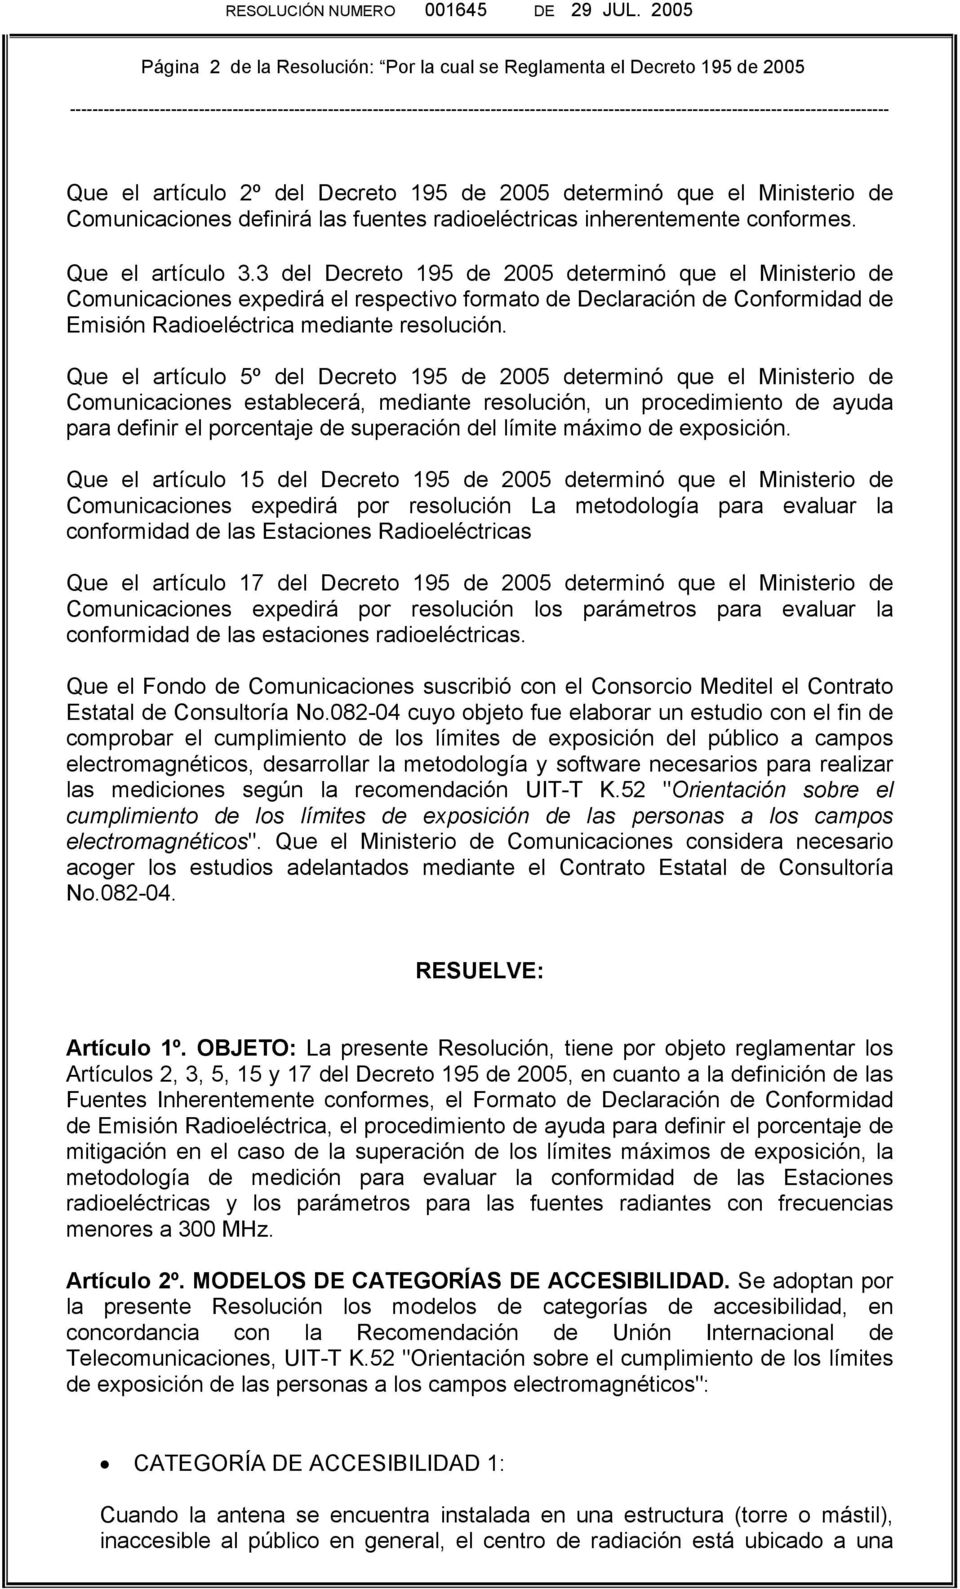 3 del Decreto 195 de 2005 determinó que el Ministerio de Comunicaciones expedirá el respectivo formato de Declaración de Conformidad de Emisión Radioeléctrica mediante resolución.